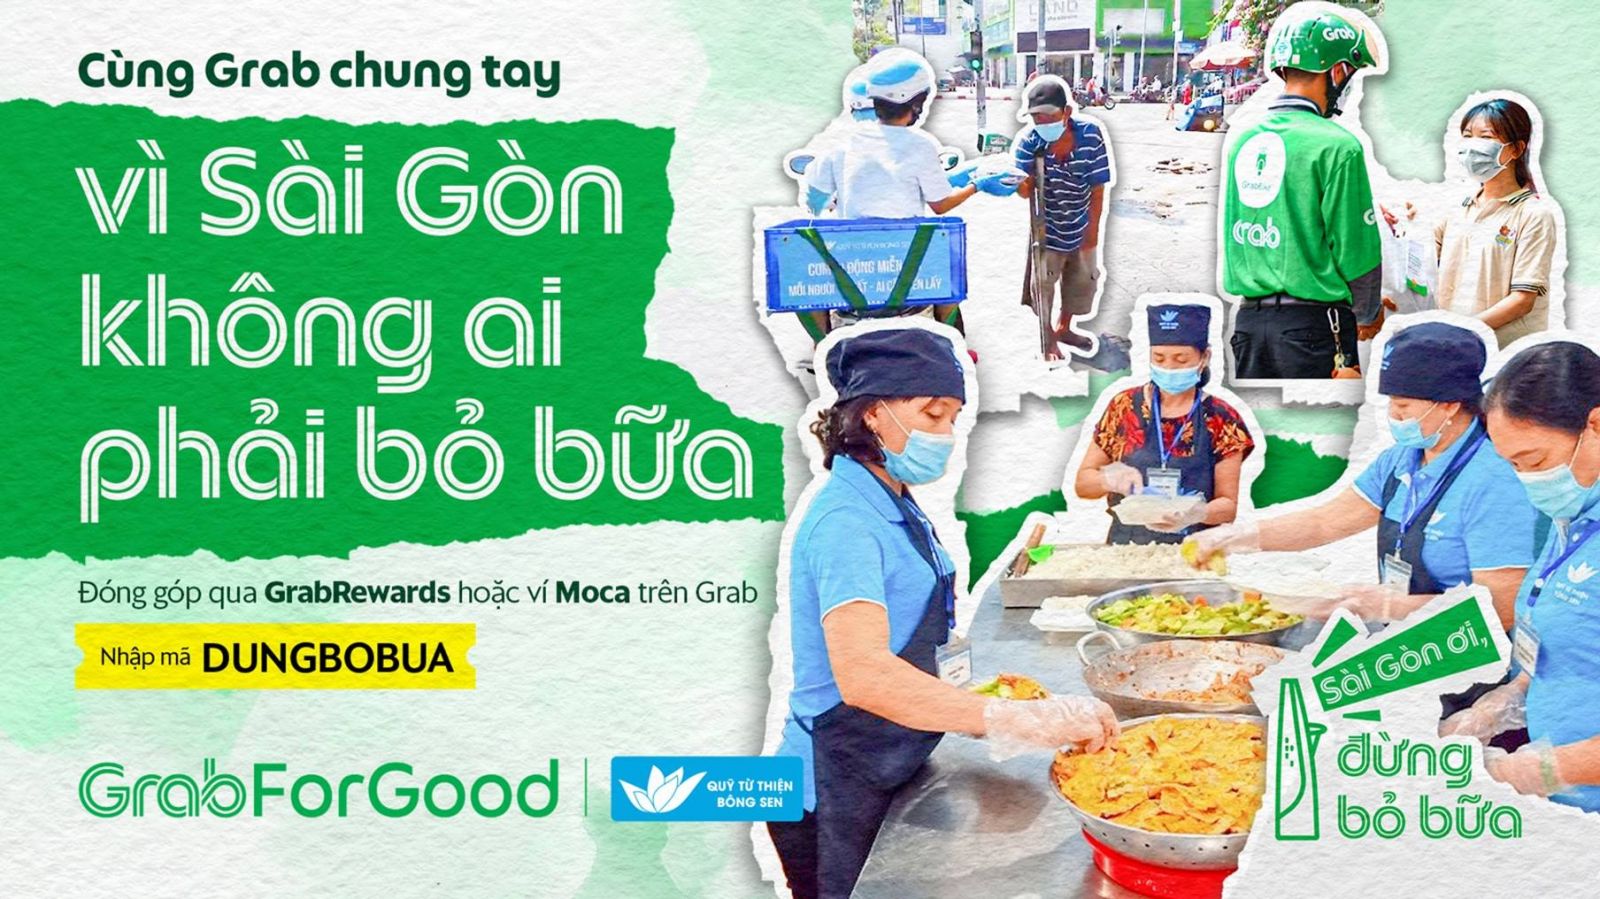 Grab Việt Nam mang bữa ăn đến với người khó khăn trong đại dịch COVID-19